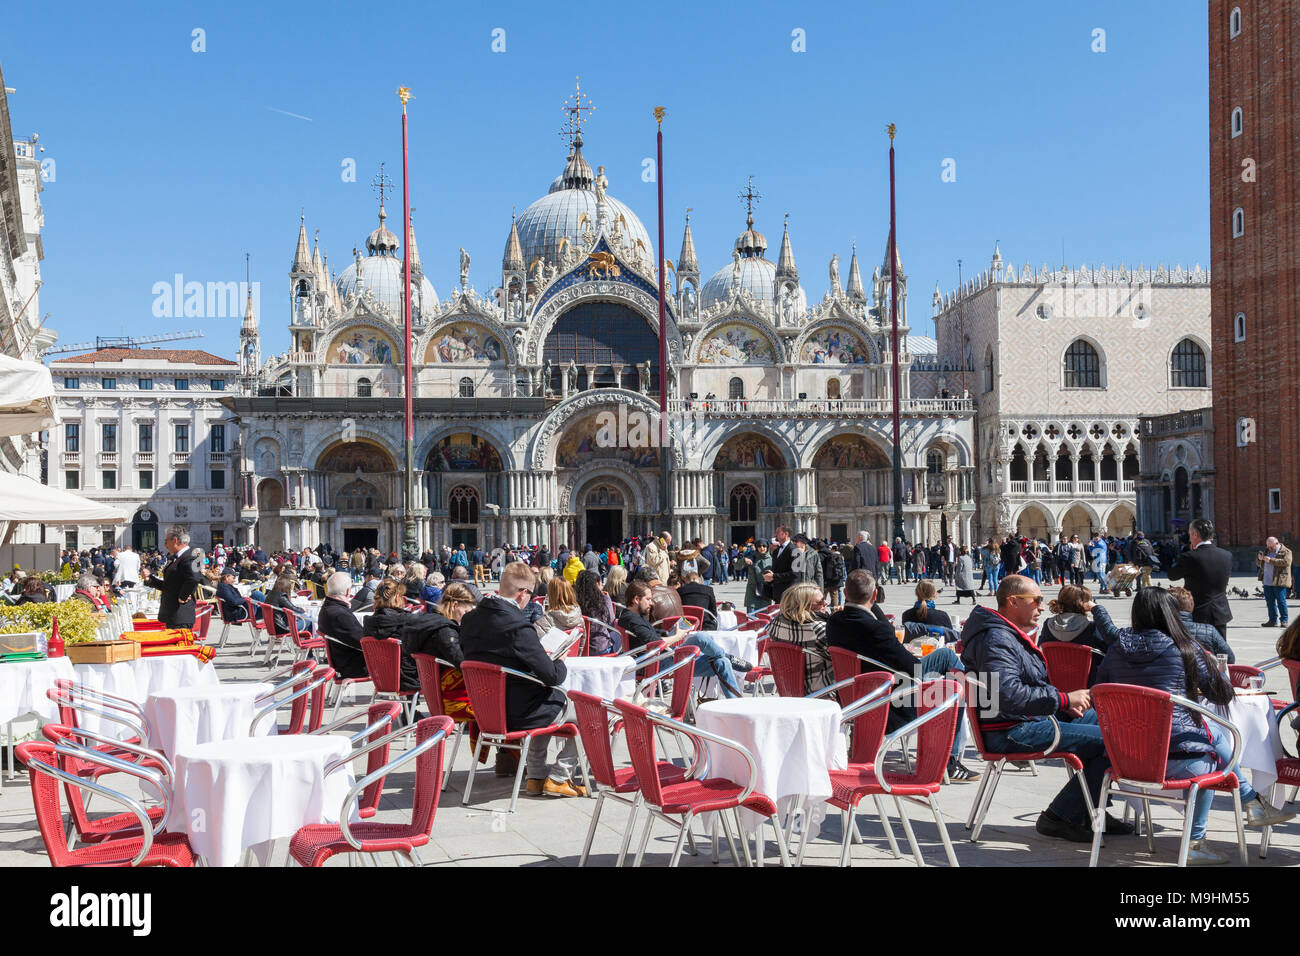 Les gens assis à des tables de restaurant pour le déjeuner sur la Piazza San Marco (Place Saint Marc), Venise, Italie, en face de la Basilique St Marc (basilique San Marco) Banque D'Images